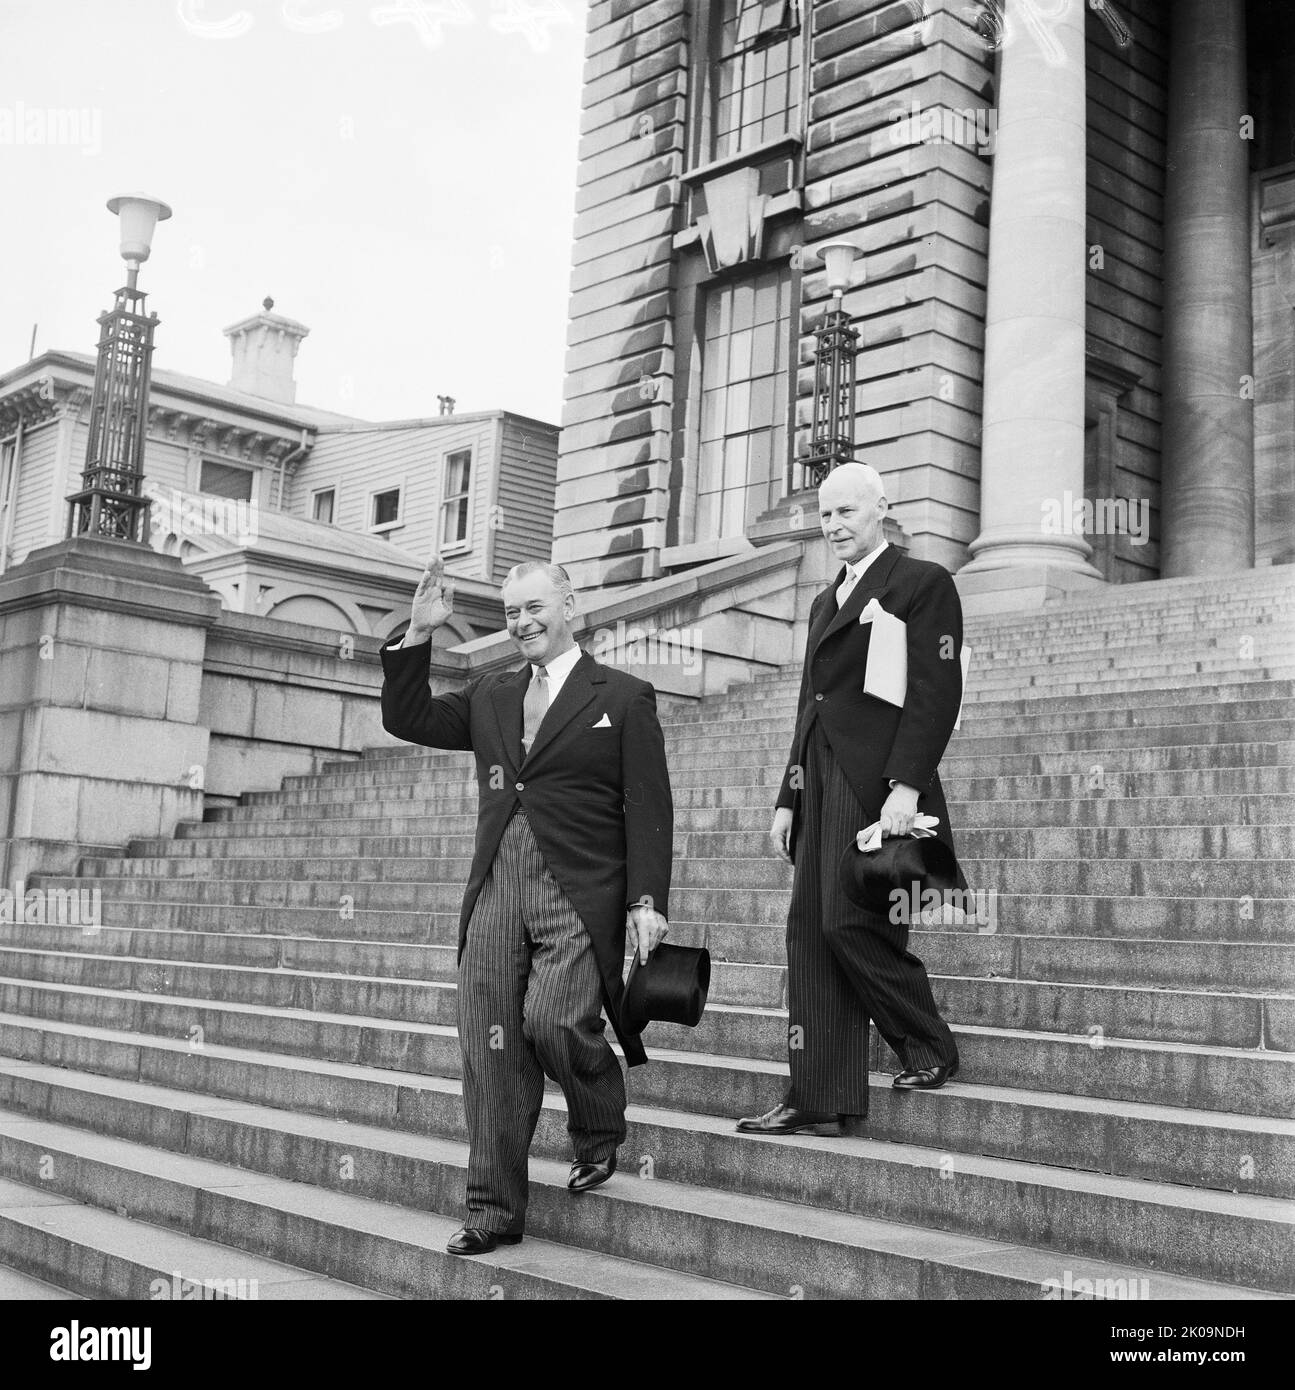 Der designierte Premierminister von Neuseeland, Keith Holyoake, verlässt die Parlamentsgebäude mit dem Leiter des Exekutivrats auf dem Weg zum Regierungsgebäude. Fotografiert am 12. Dezember 1960 von einem Mitarbeiter der Evening Post. Stockfoto